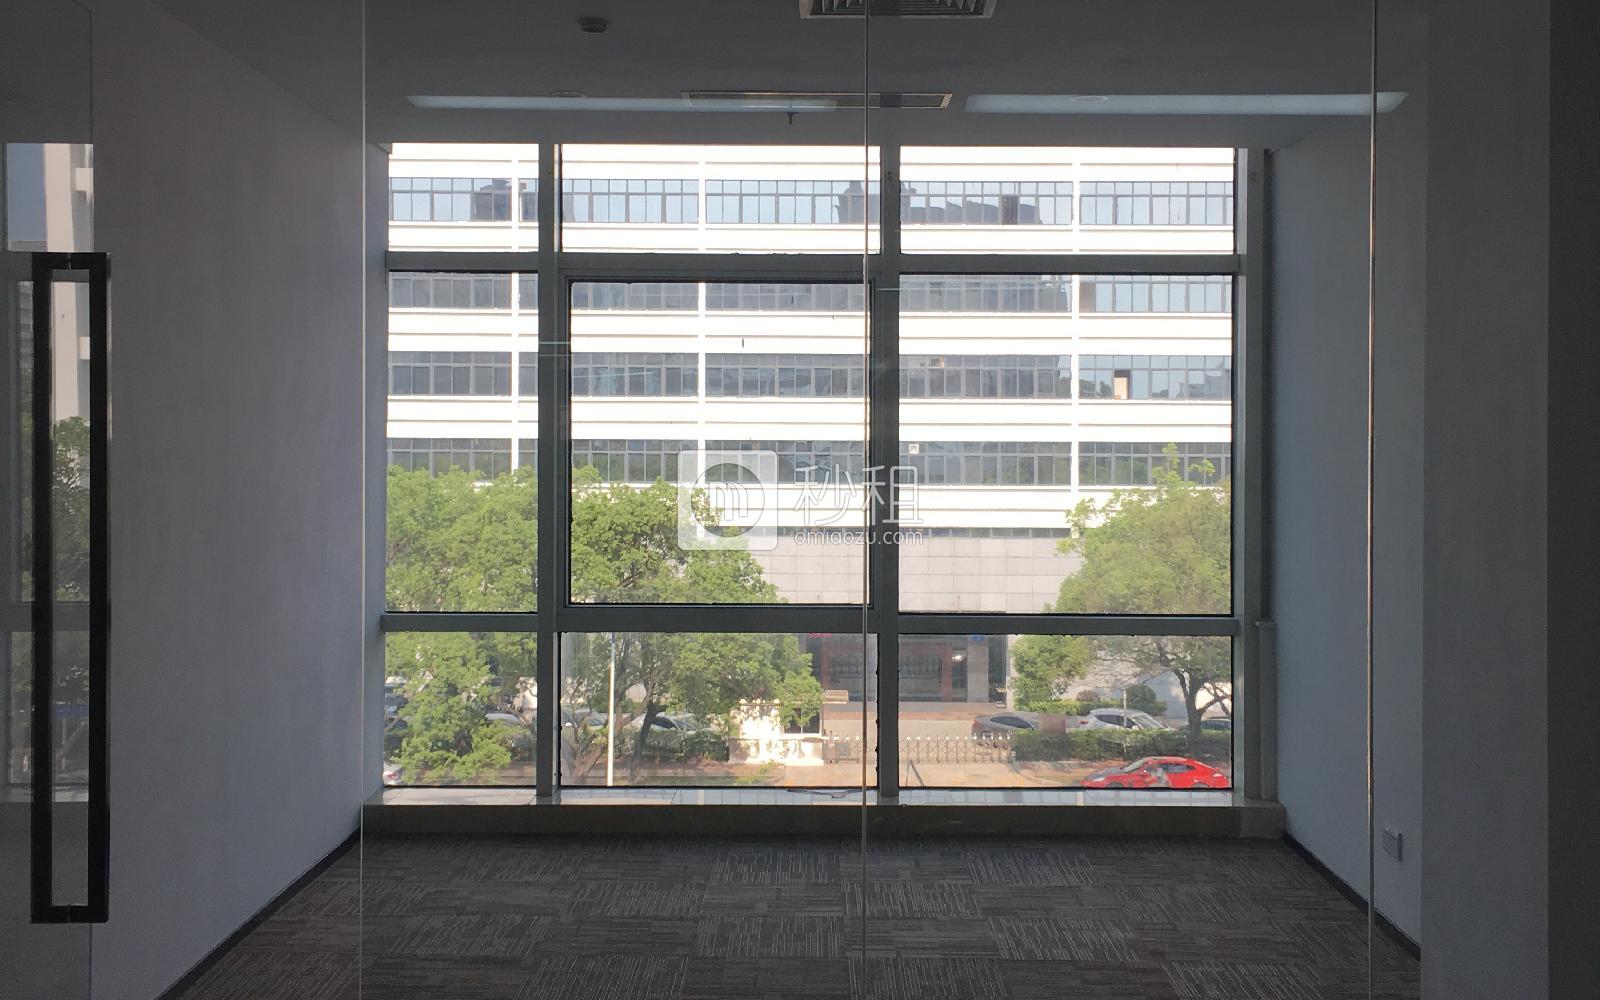 宏益嘉瑞大厦写字楼出租268平米精装办公室85元/m².月